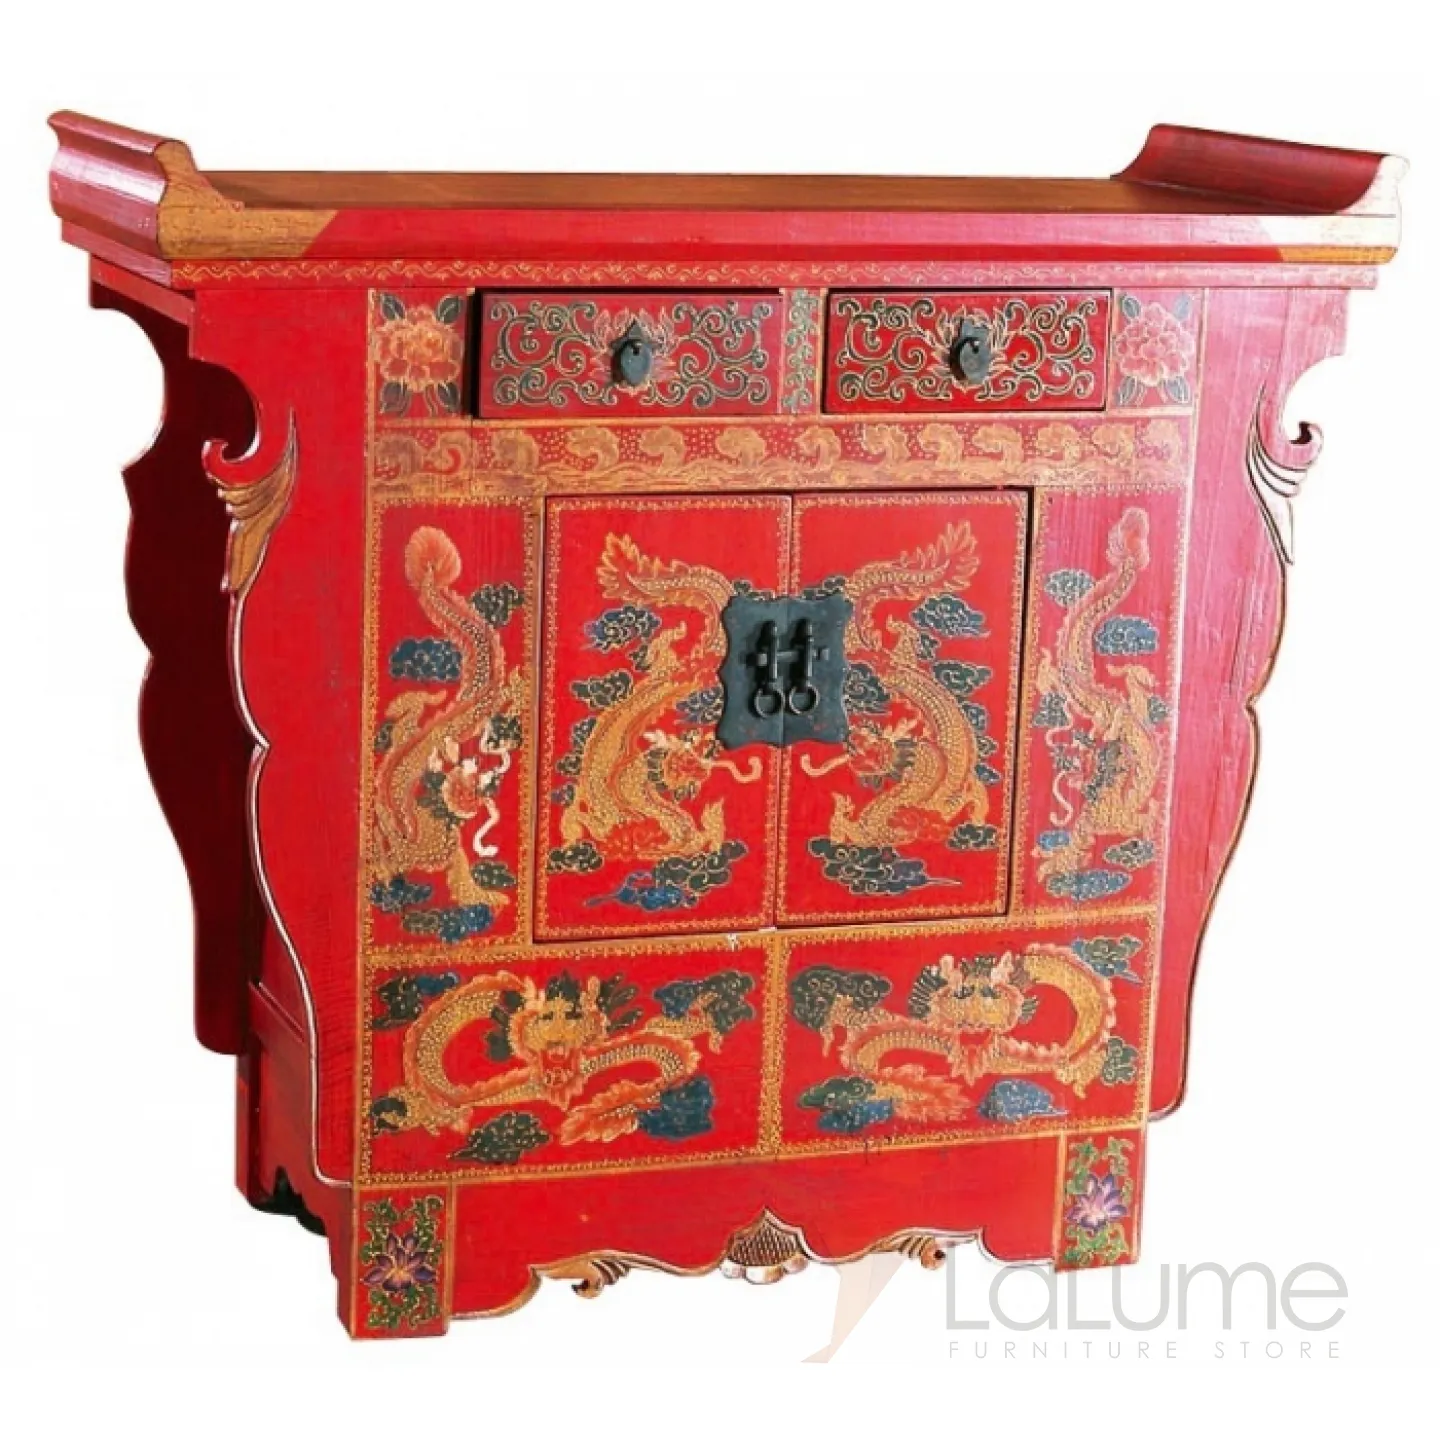 Китайская мебель купить. Традиционная китайская мебель. Древняя китайская мебель. Комод в китайском стиле. Мебель в китайском стиле.